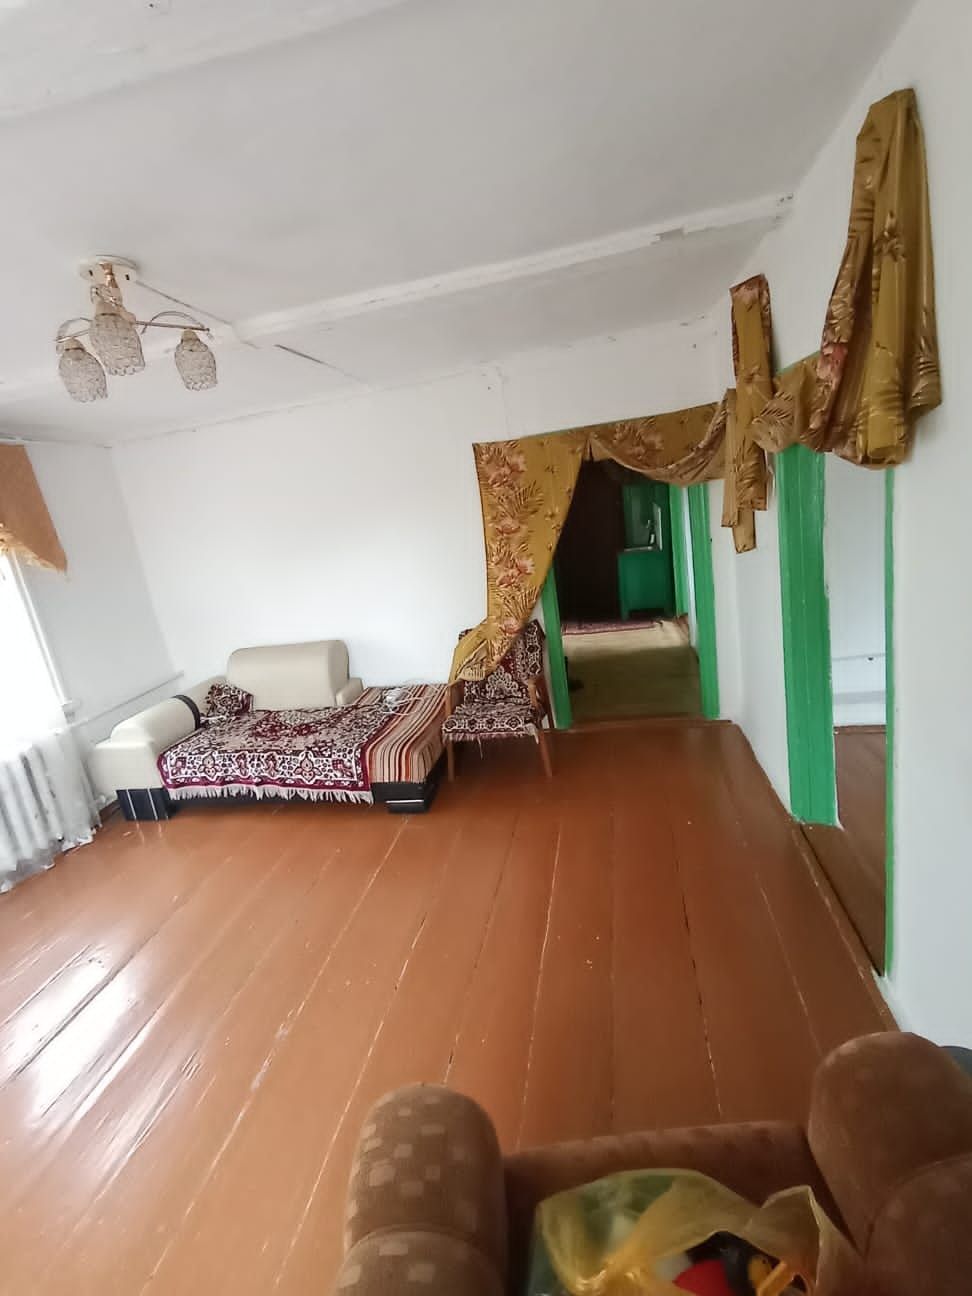 Продам уютный дом в селе Новопокровка, от г. Семей 30 км!!